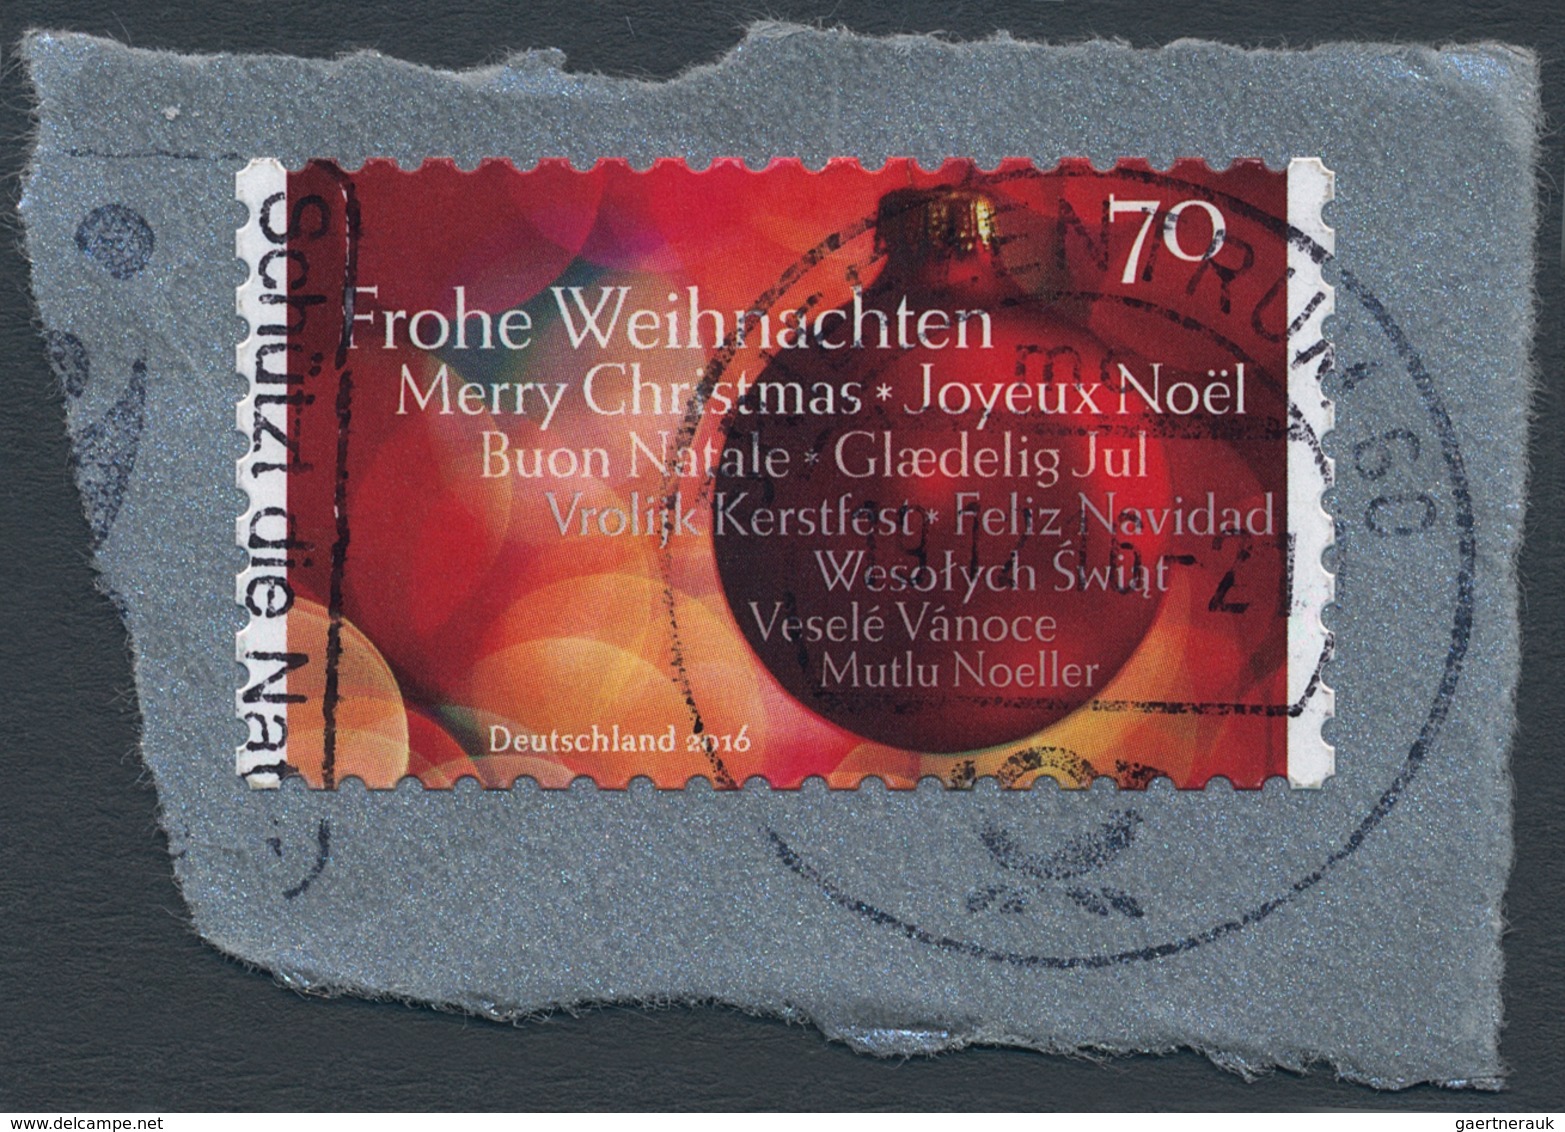 Bundesrepublik Deutschland: 2016, Weihnachtsmarke Zu 70 Cent Selbstklebend, Mit Fehldruck "Jul" Groß - Covers & Documents